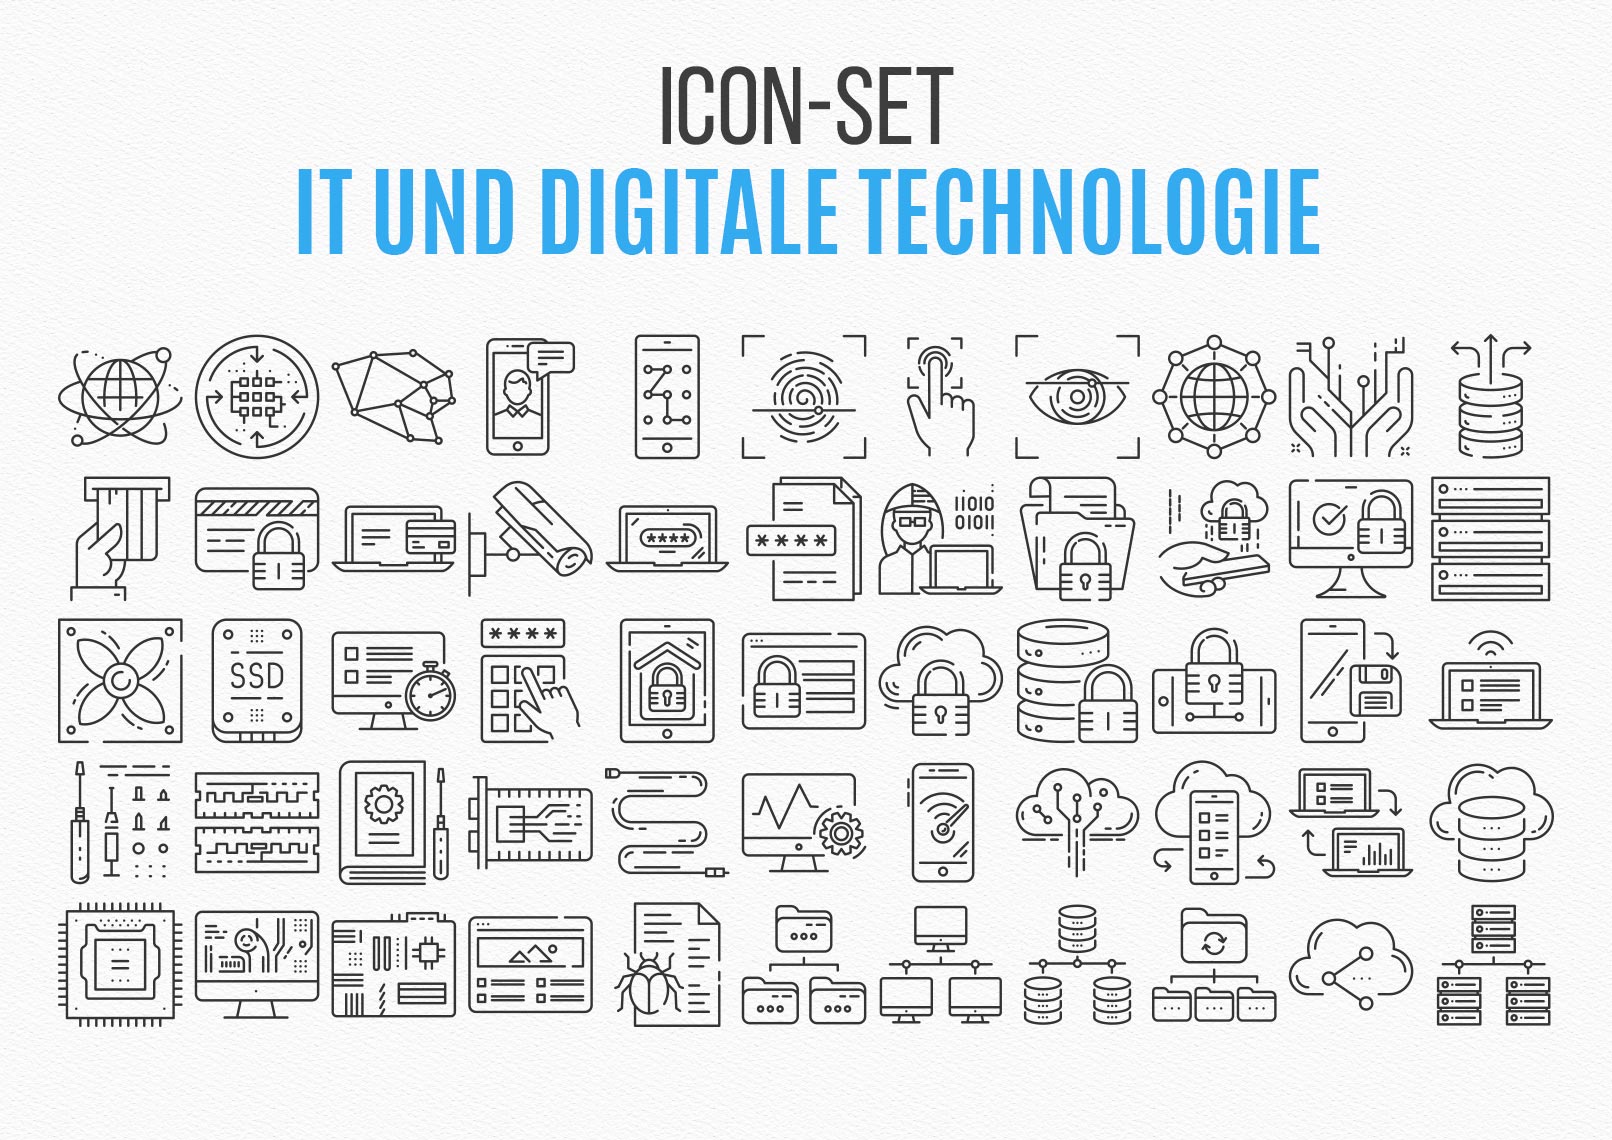 Überblick über das Icon-Set IT und digitale Technologie mit 110 Grafiken